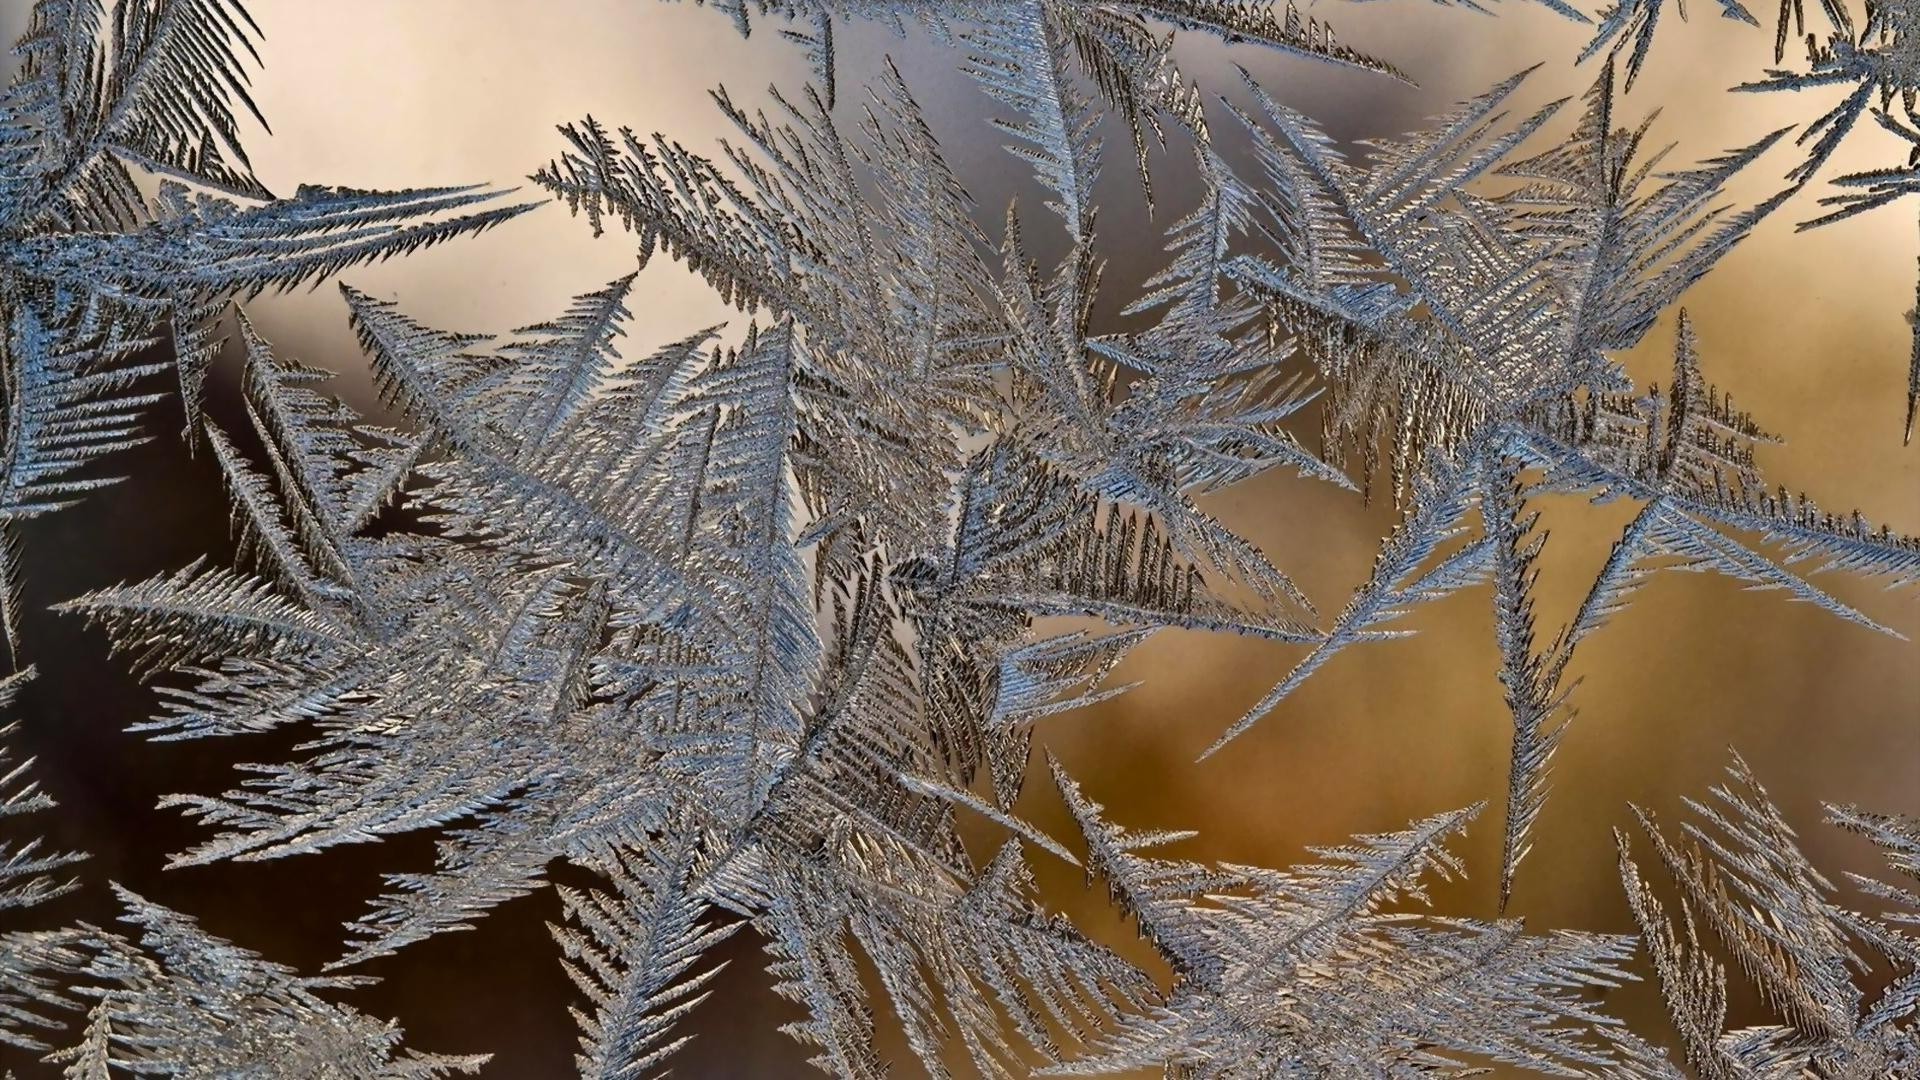 предметы зима мороз рождество снег дерево природа холодная сезон рабочего стола